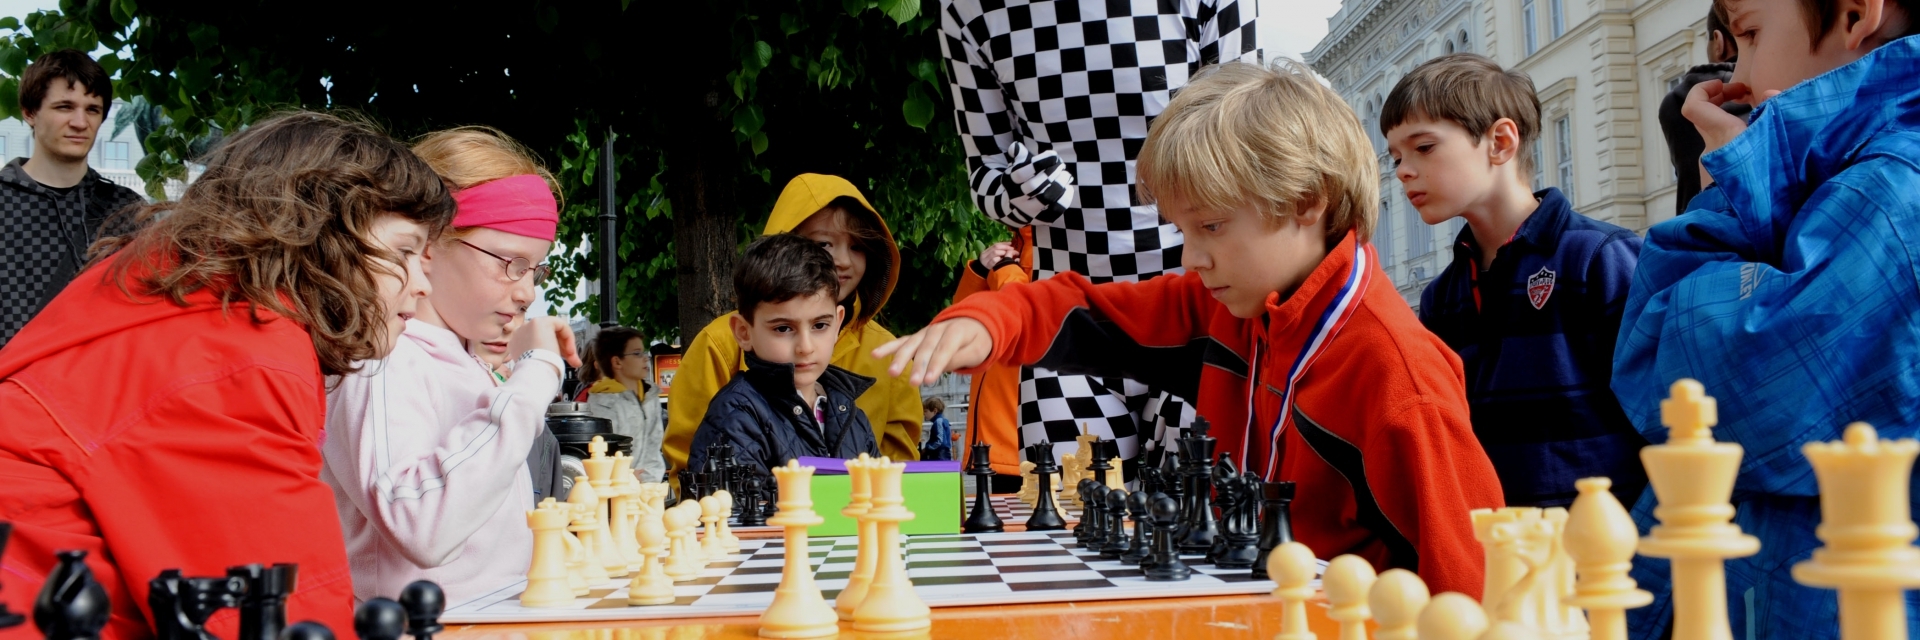 Chessman kiebitzt bei Kinderpartie